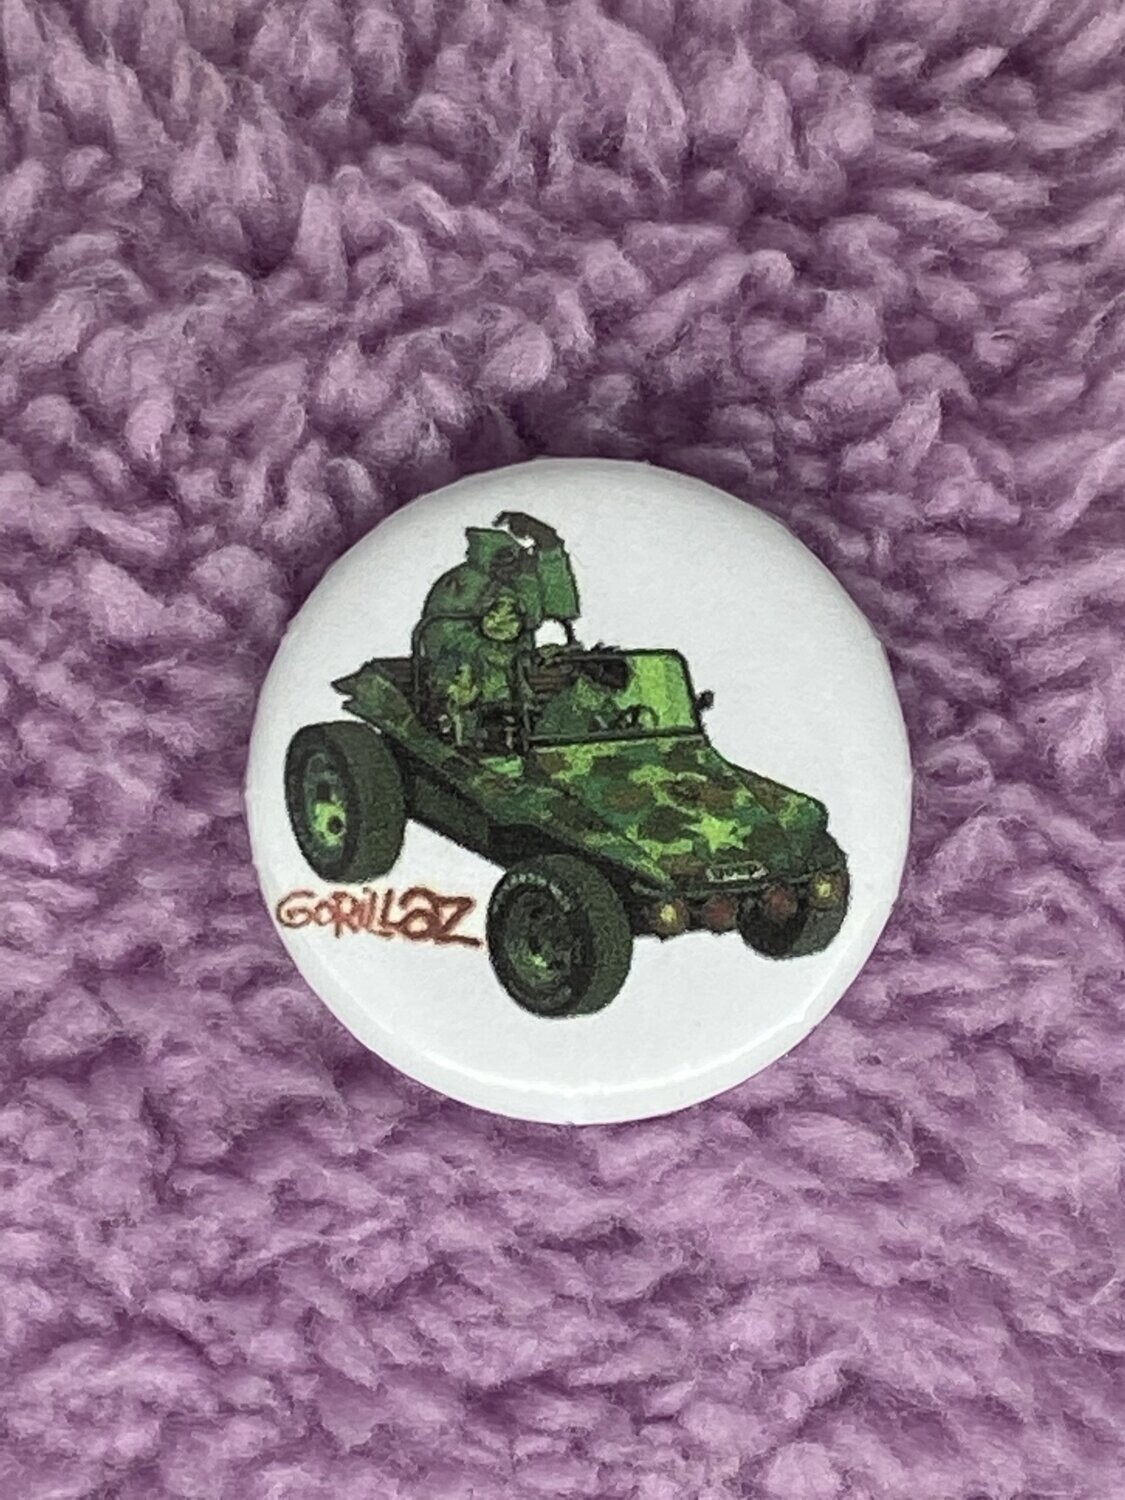 Gorillaz Badge